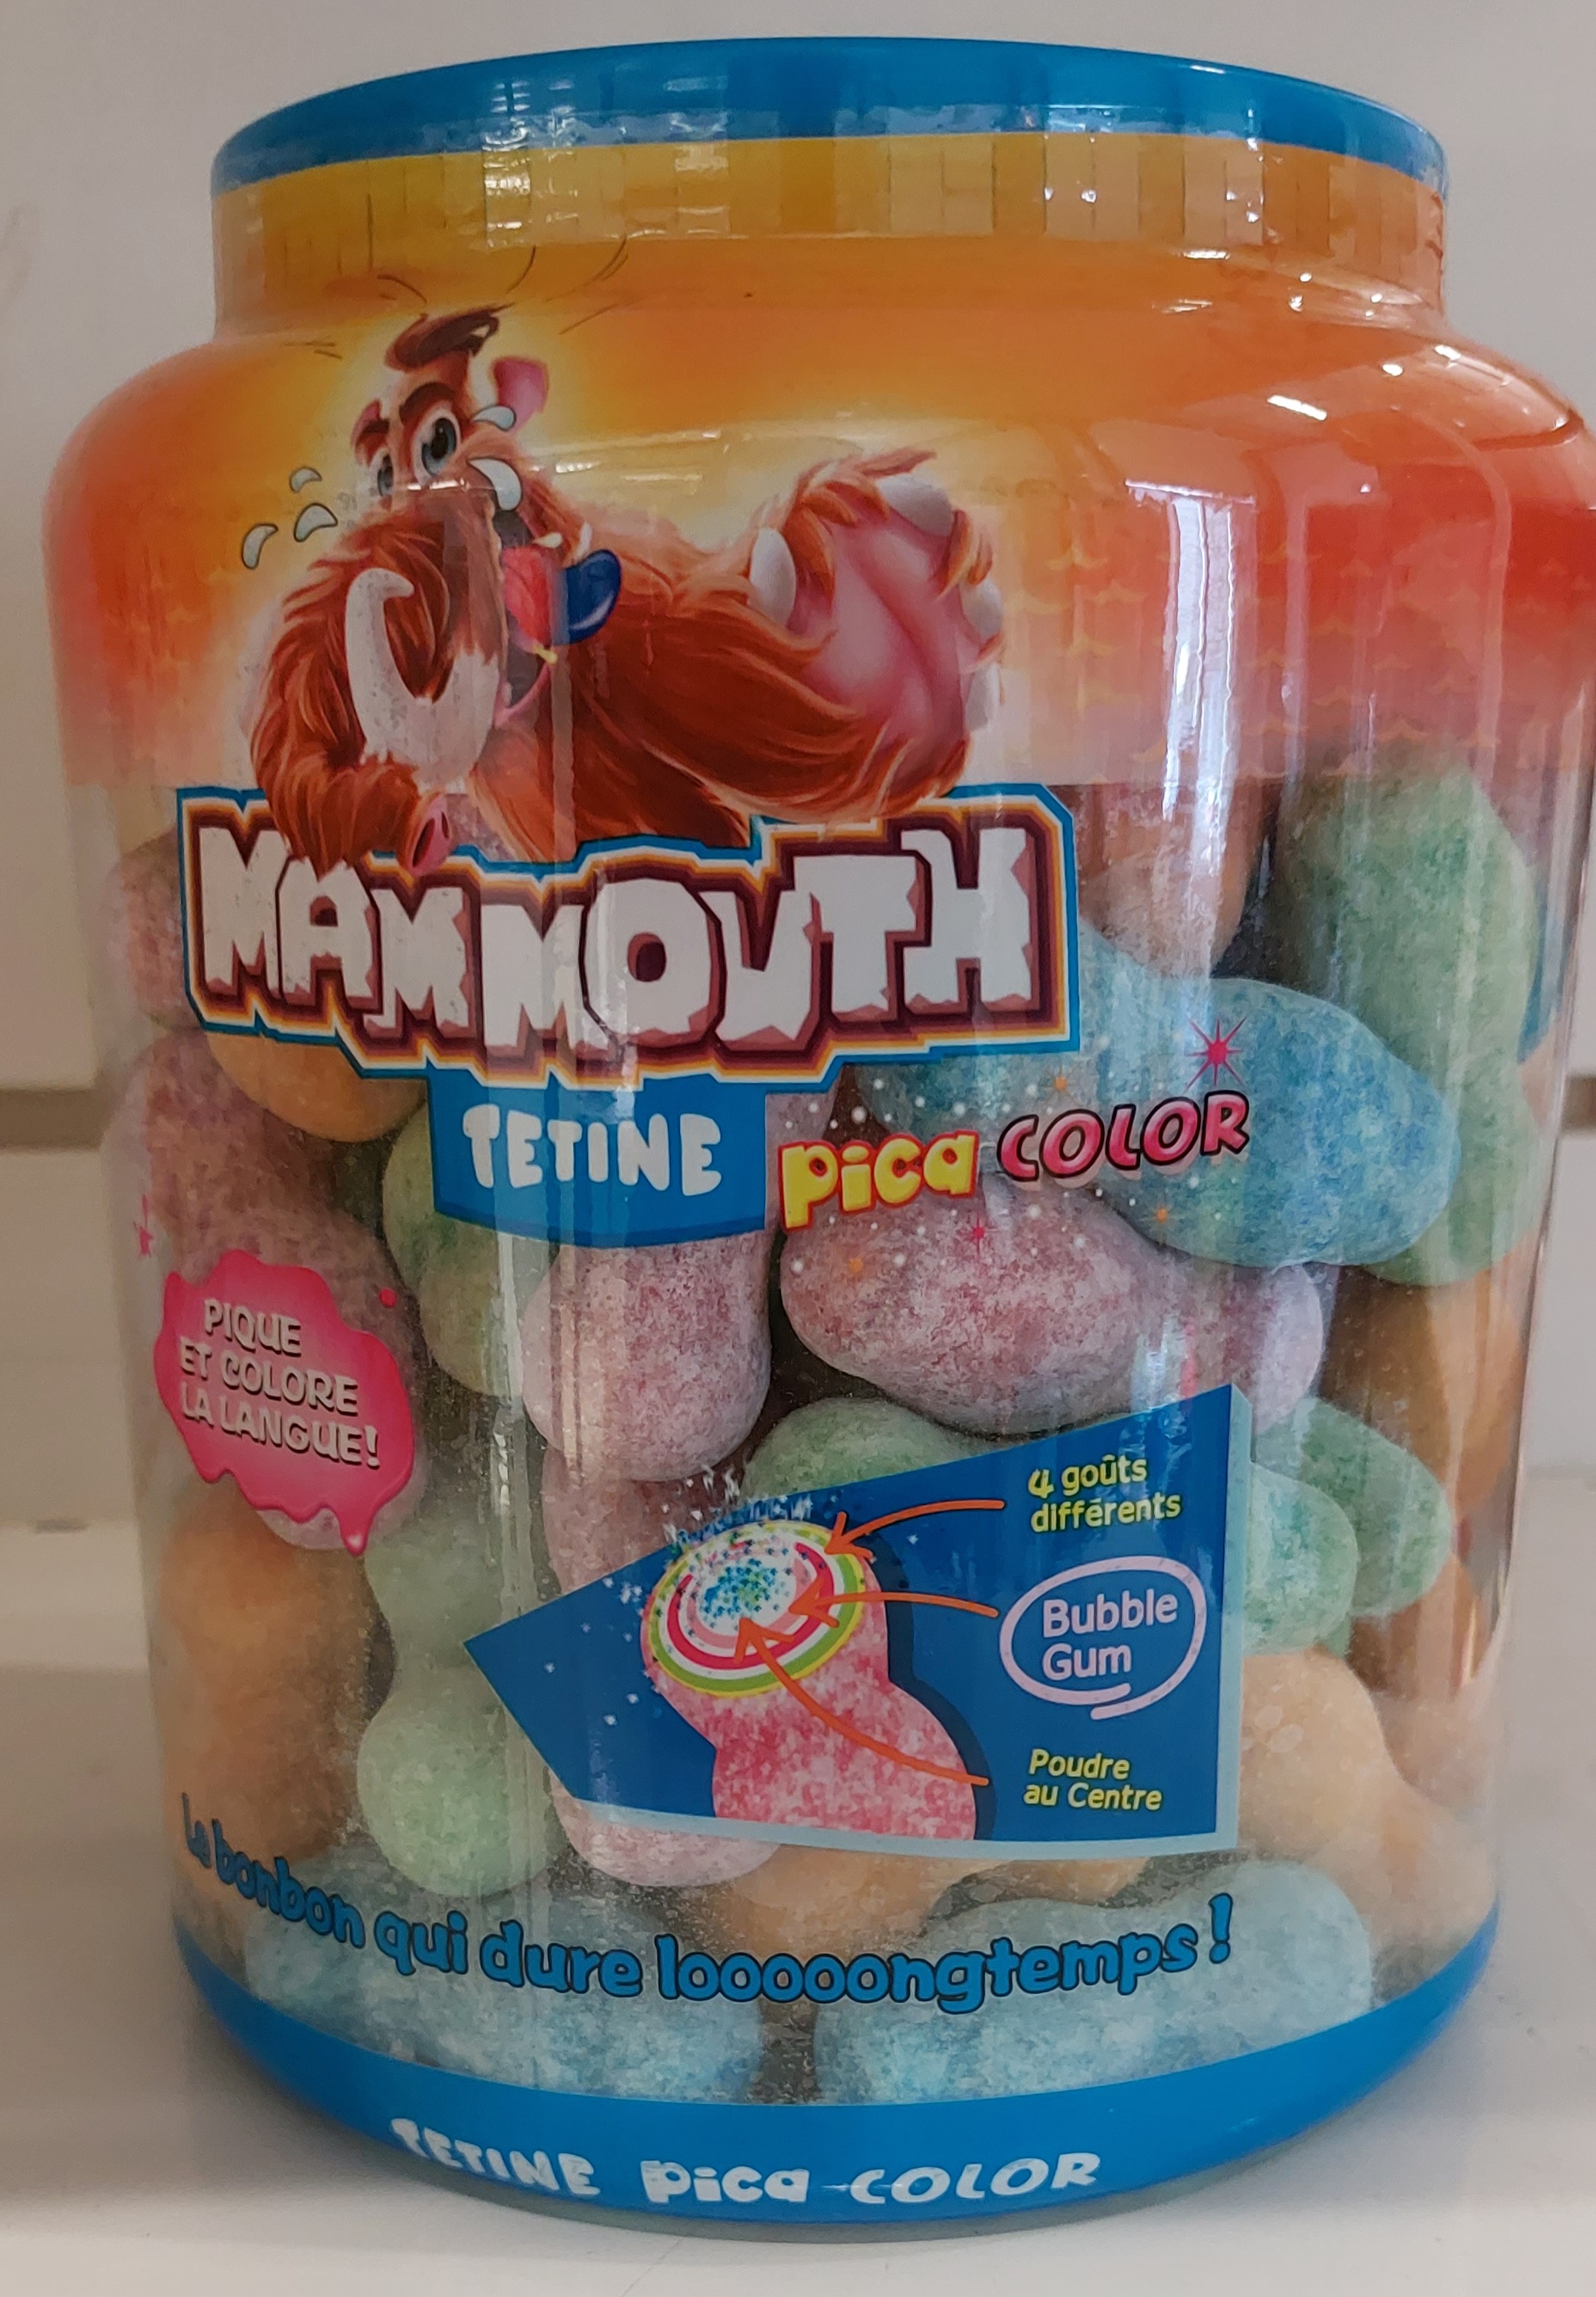 Boule de Chewing-gum en forme de goût pastèque - x3